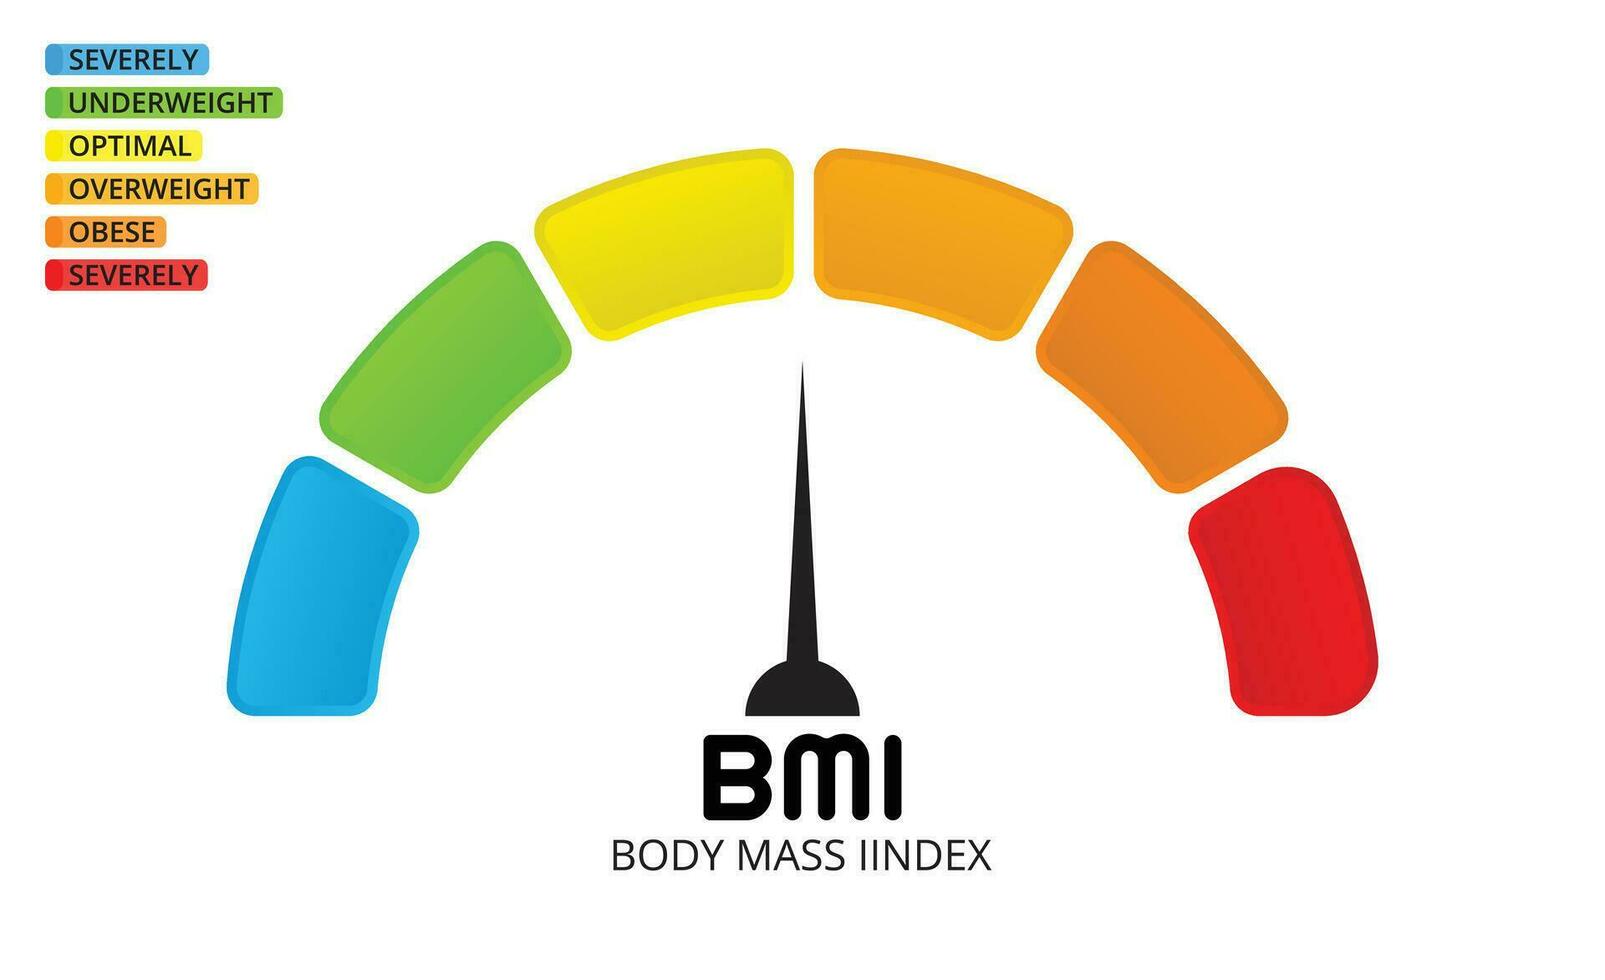 Bmi categories chart body mass index. vector